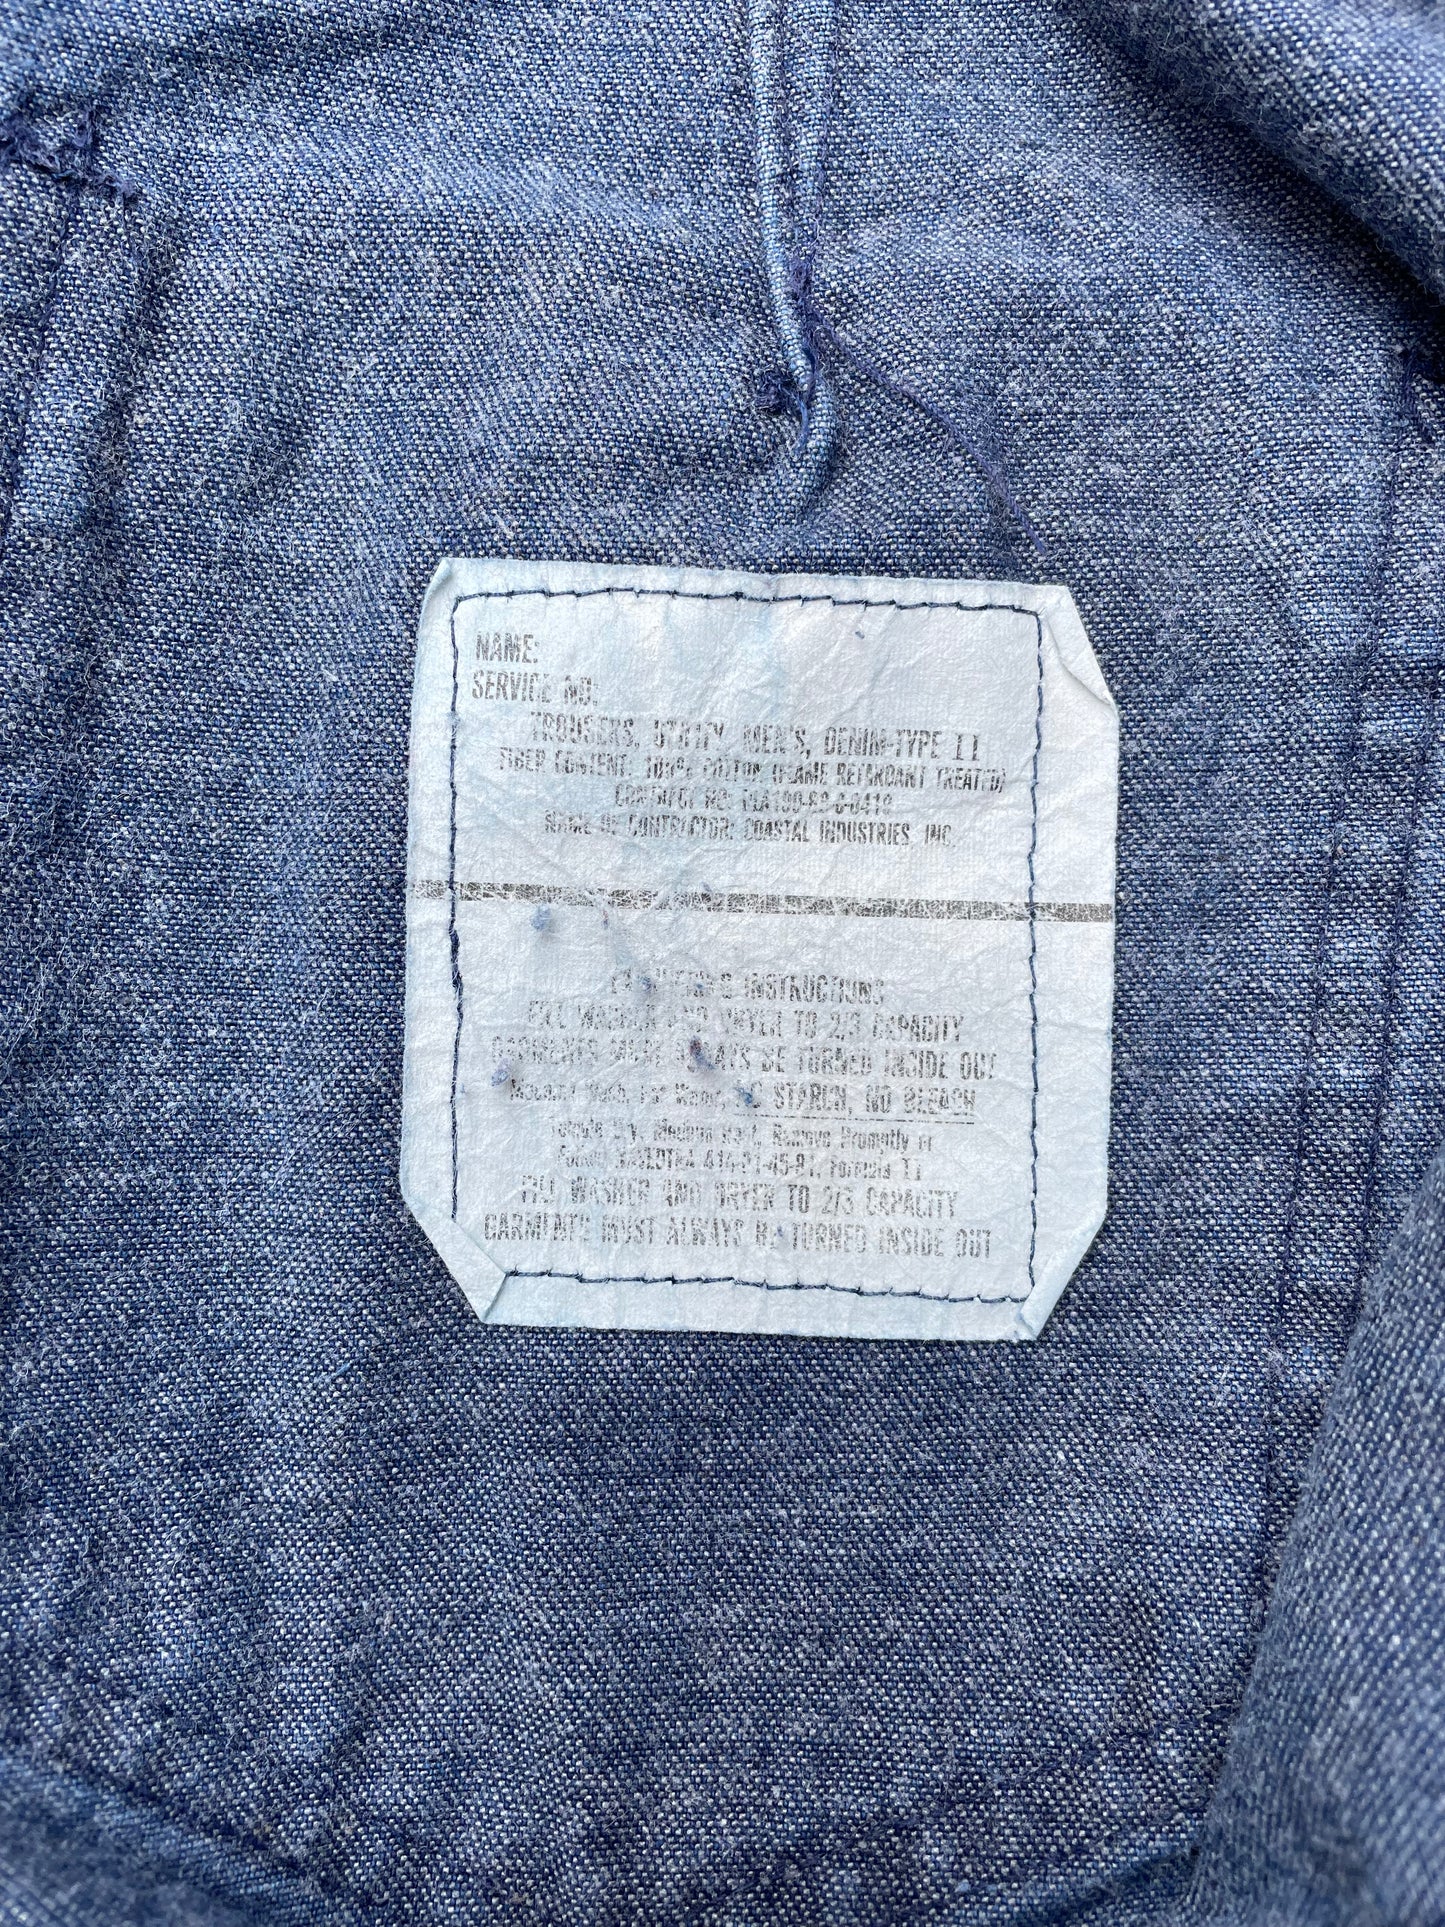 1968 U.S. Navy Stencilled Denim Deck Jeans - 37